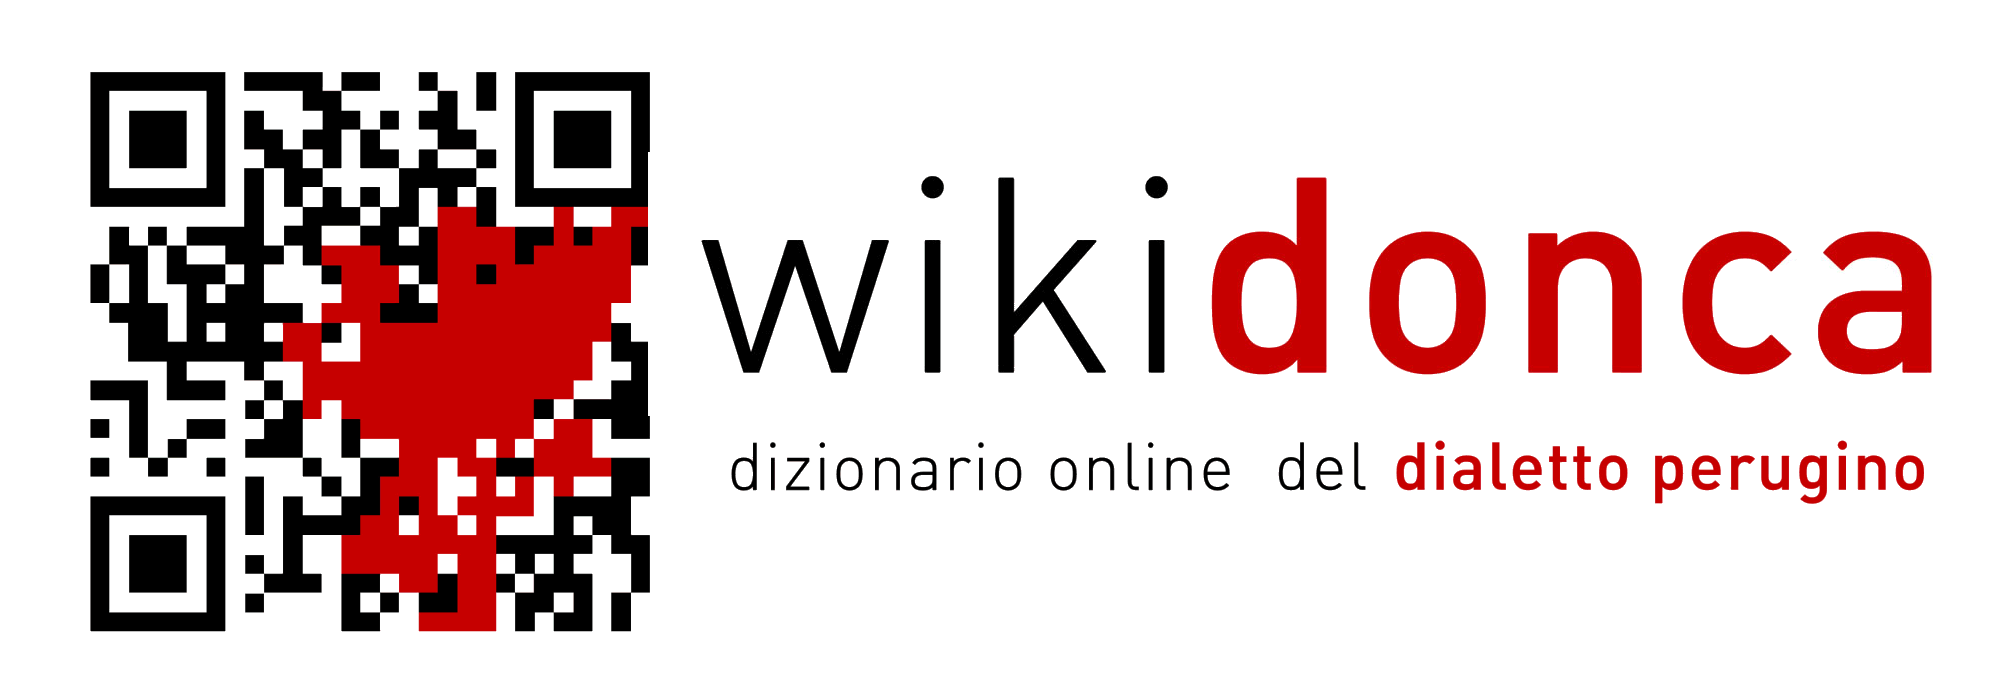 Dizionario online del Dialetto Perugino